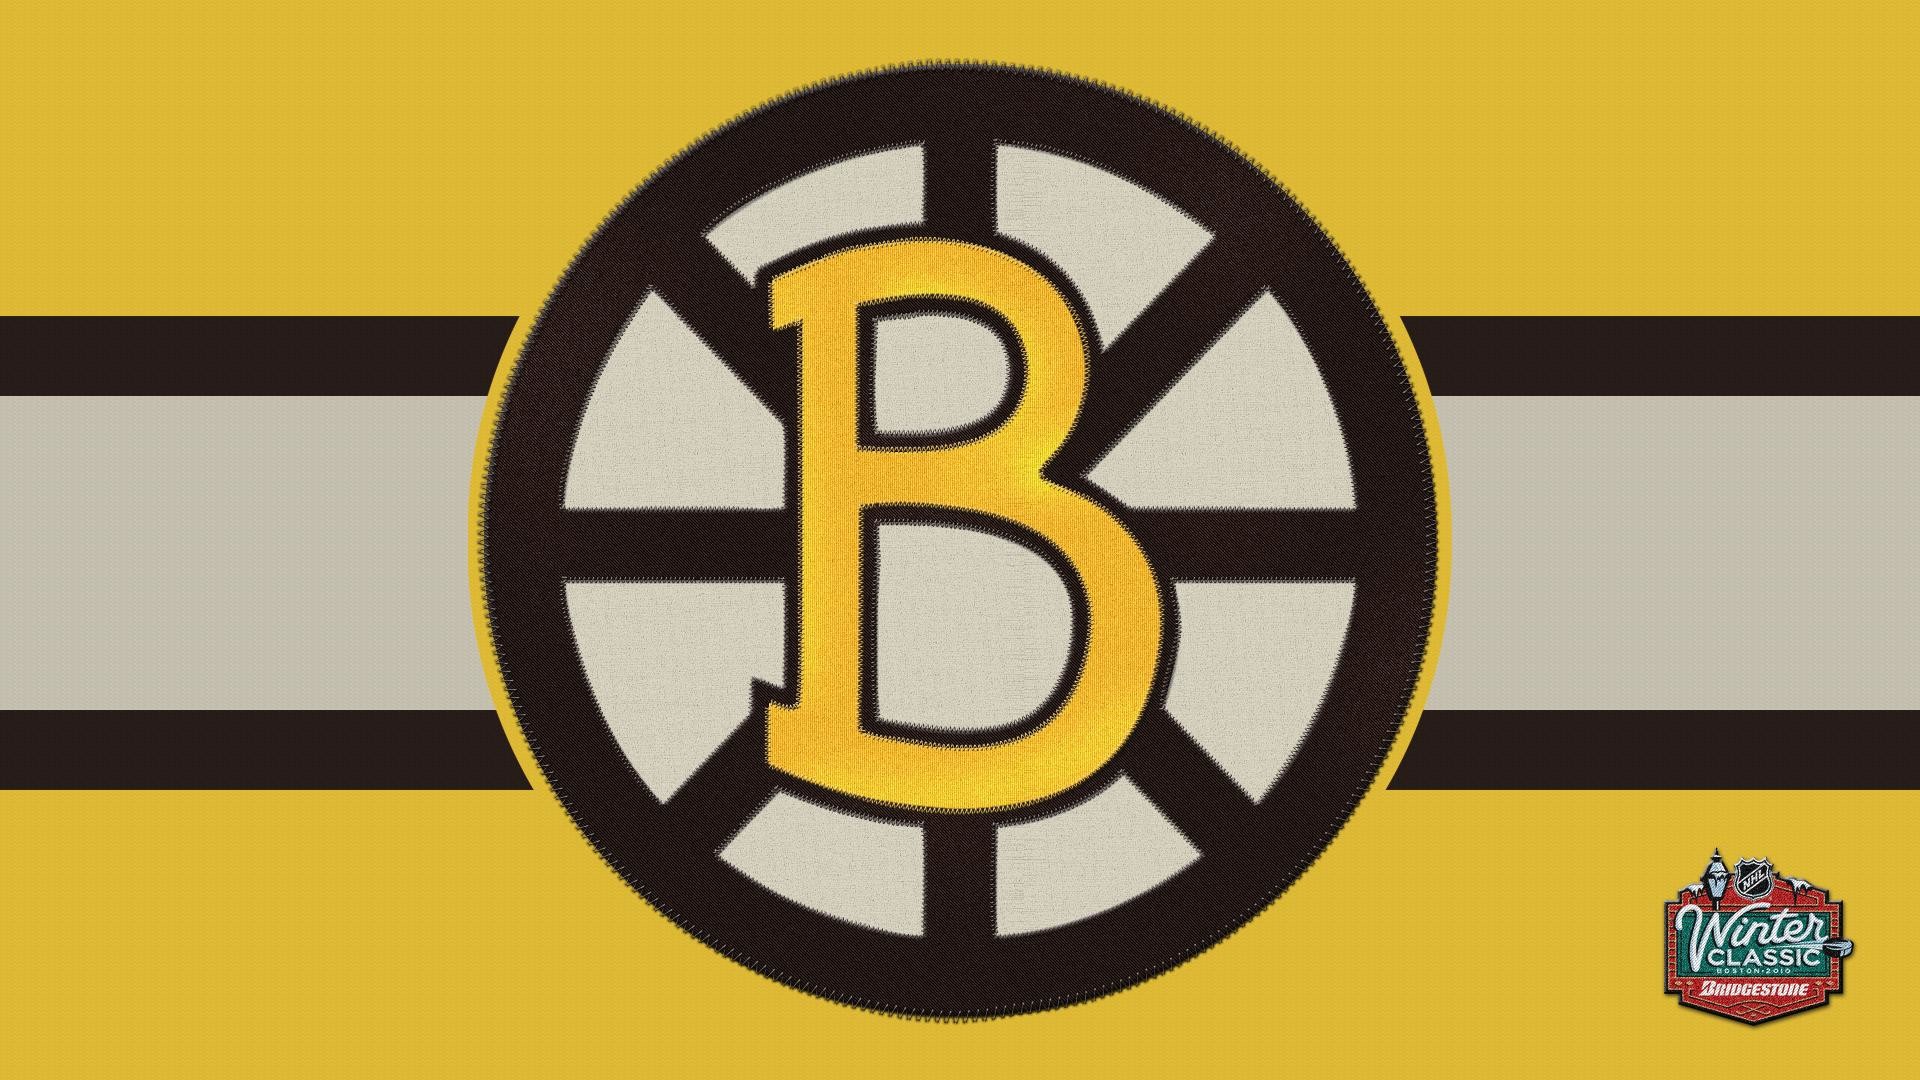 47 Boston Bruins iPhone Wallpaper  WallpaperSafari